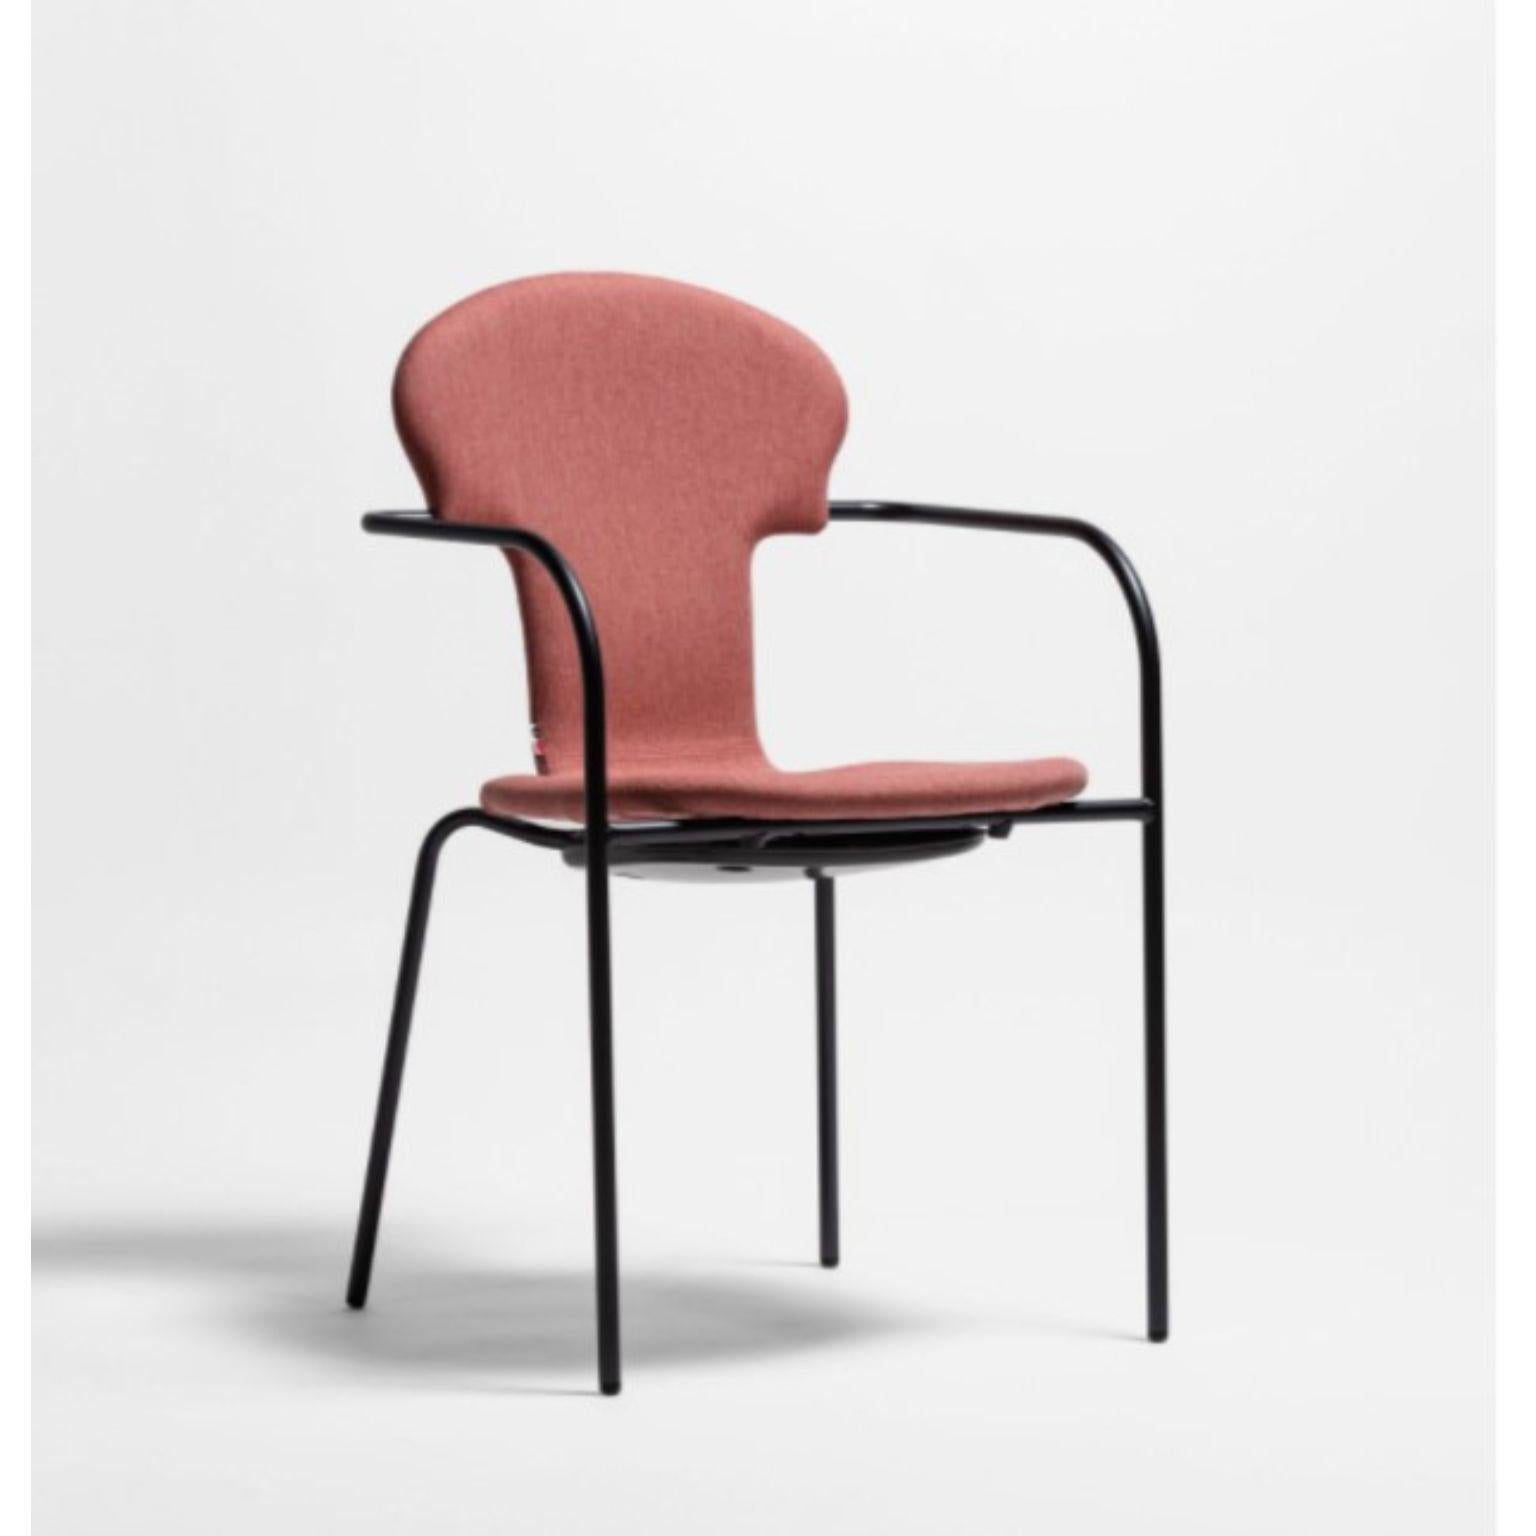 Spanish Minivarius Brown Chair by Oscar Tusquets